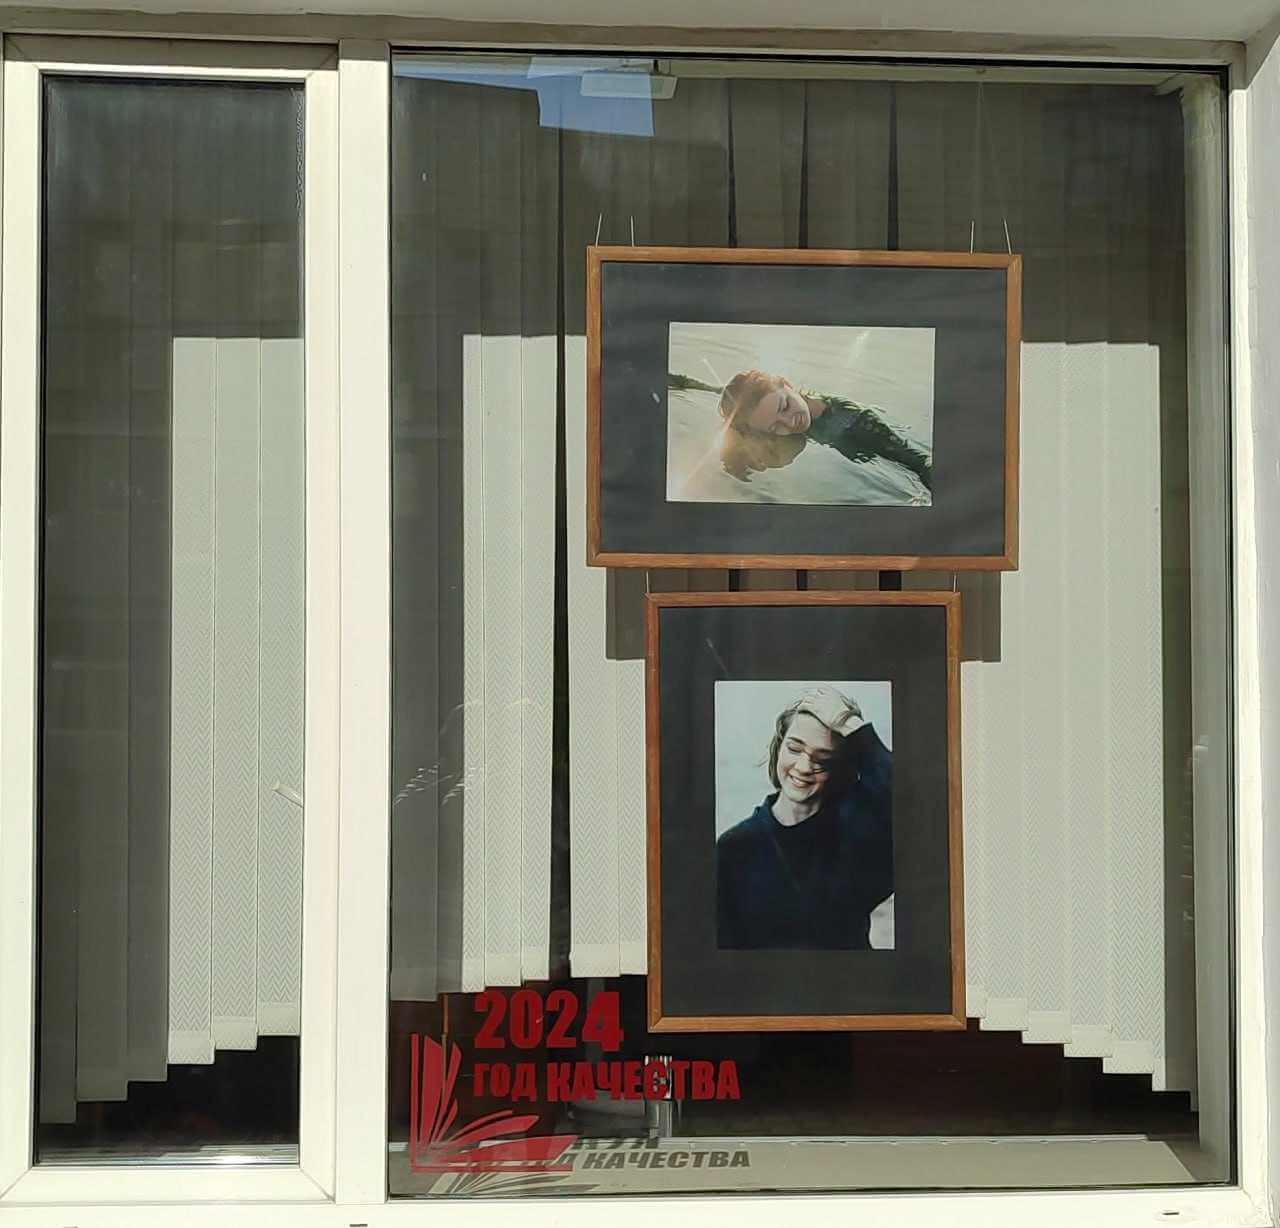 "Арт-окно": новая выставка в окнах библиотеки Могилева